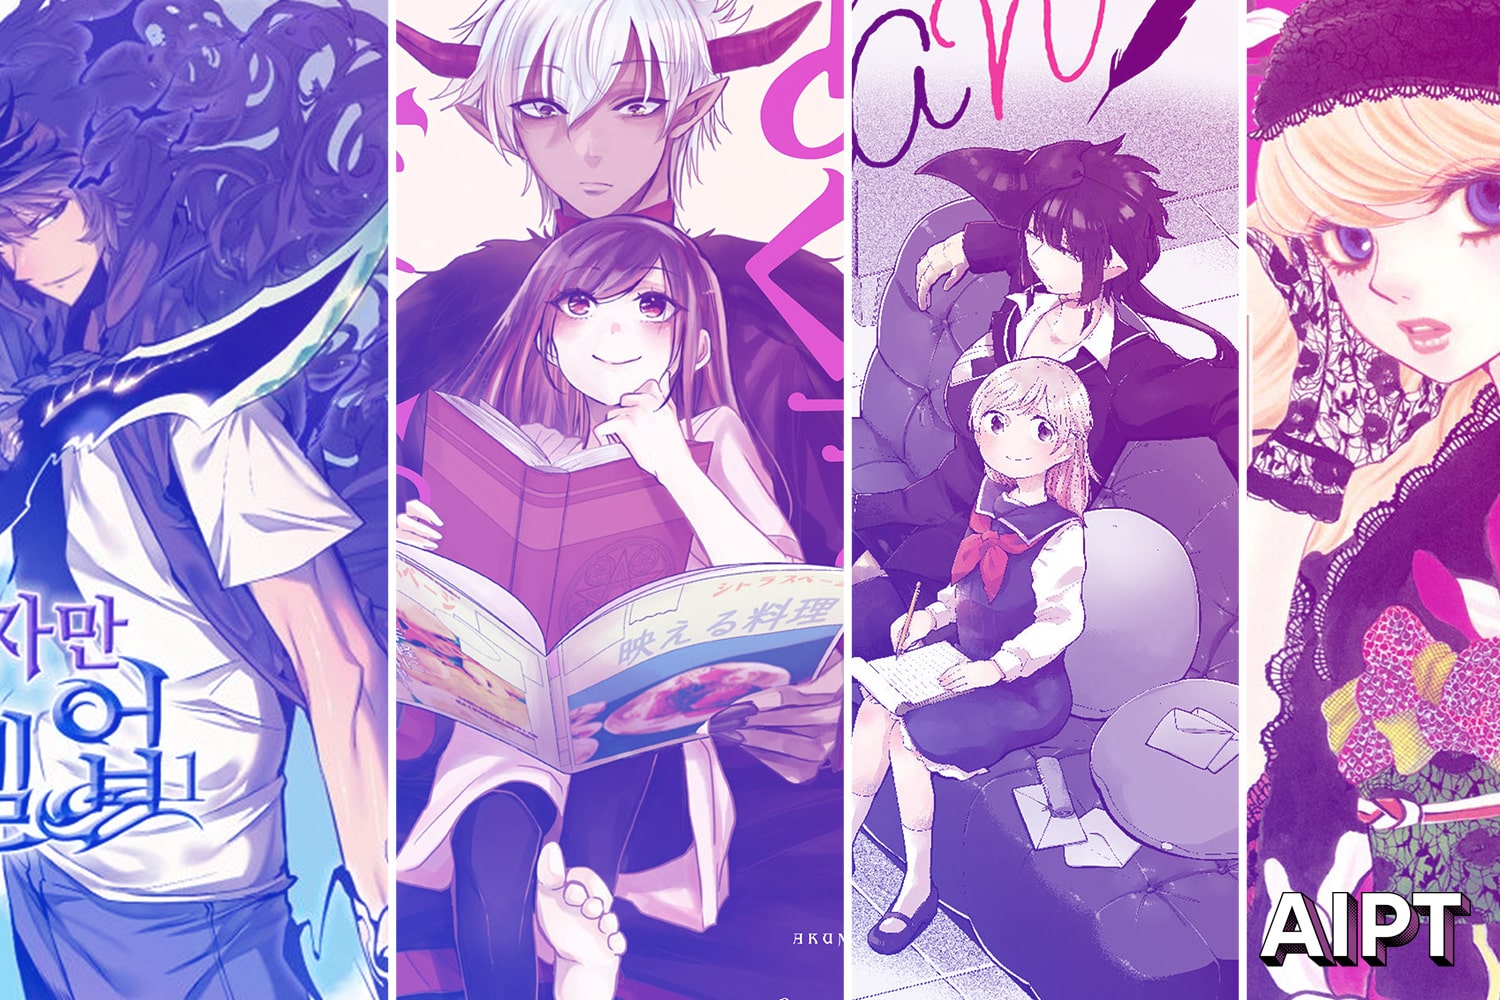 Yen Press announces 13 new titles for future publication